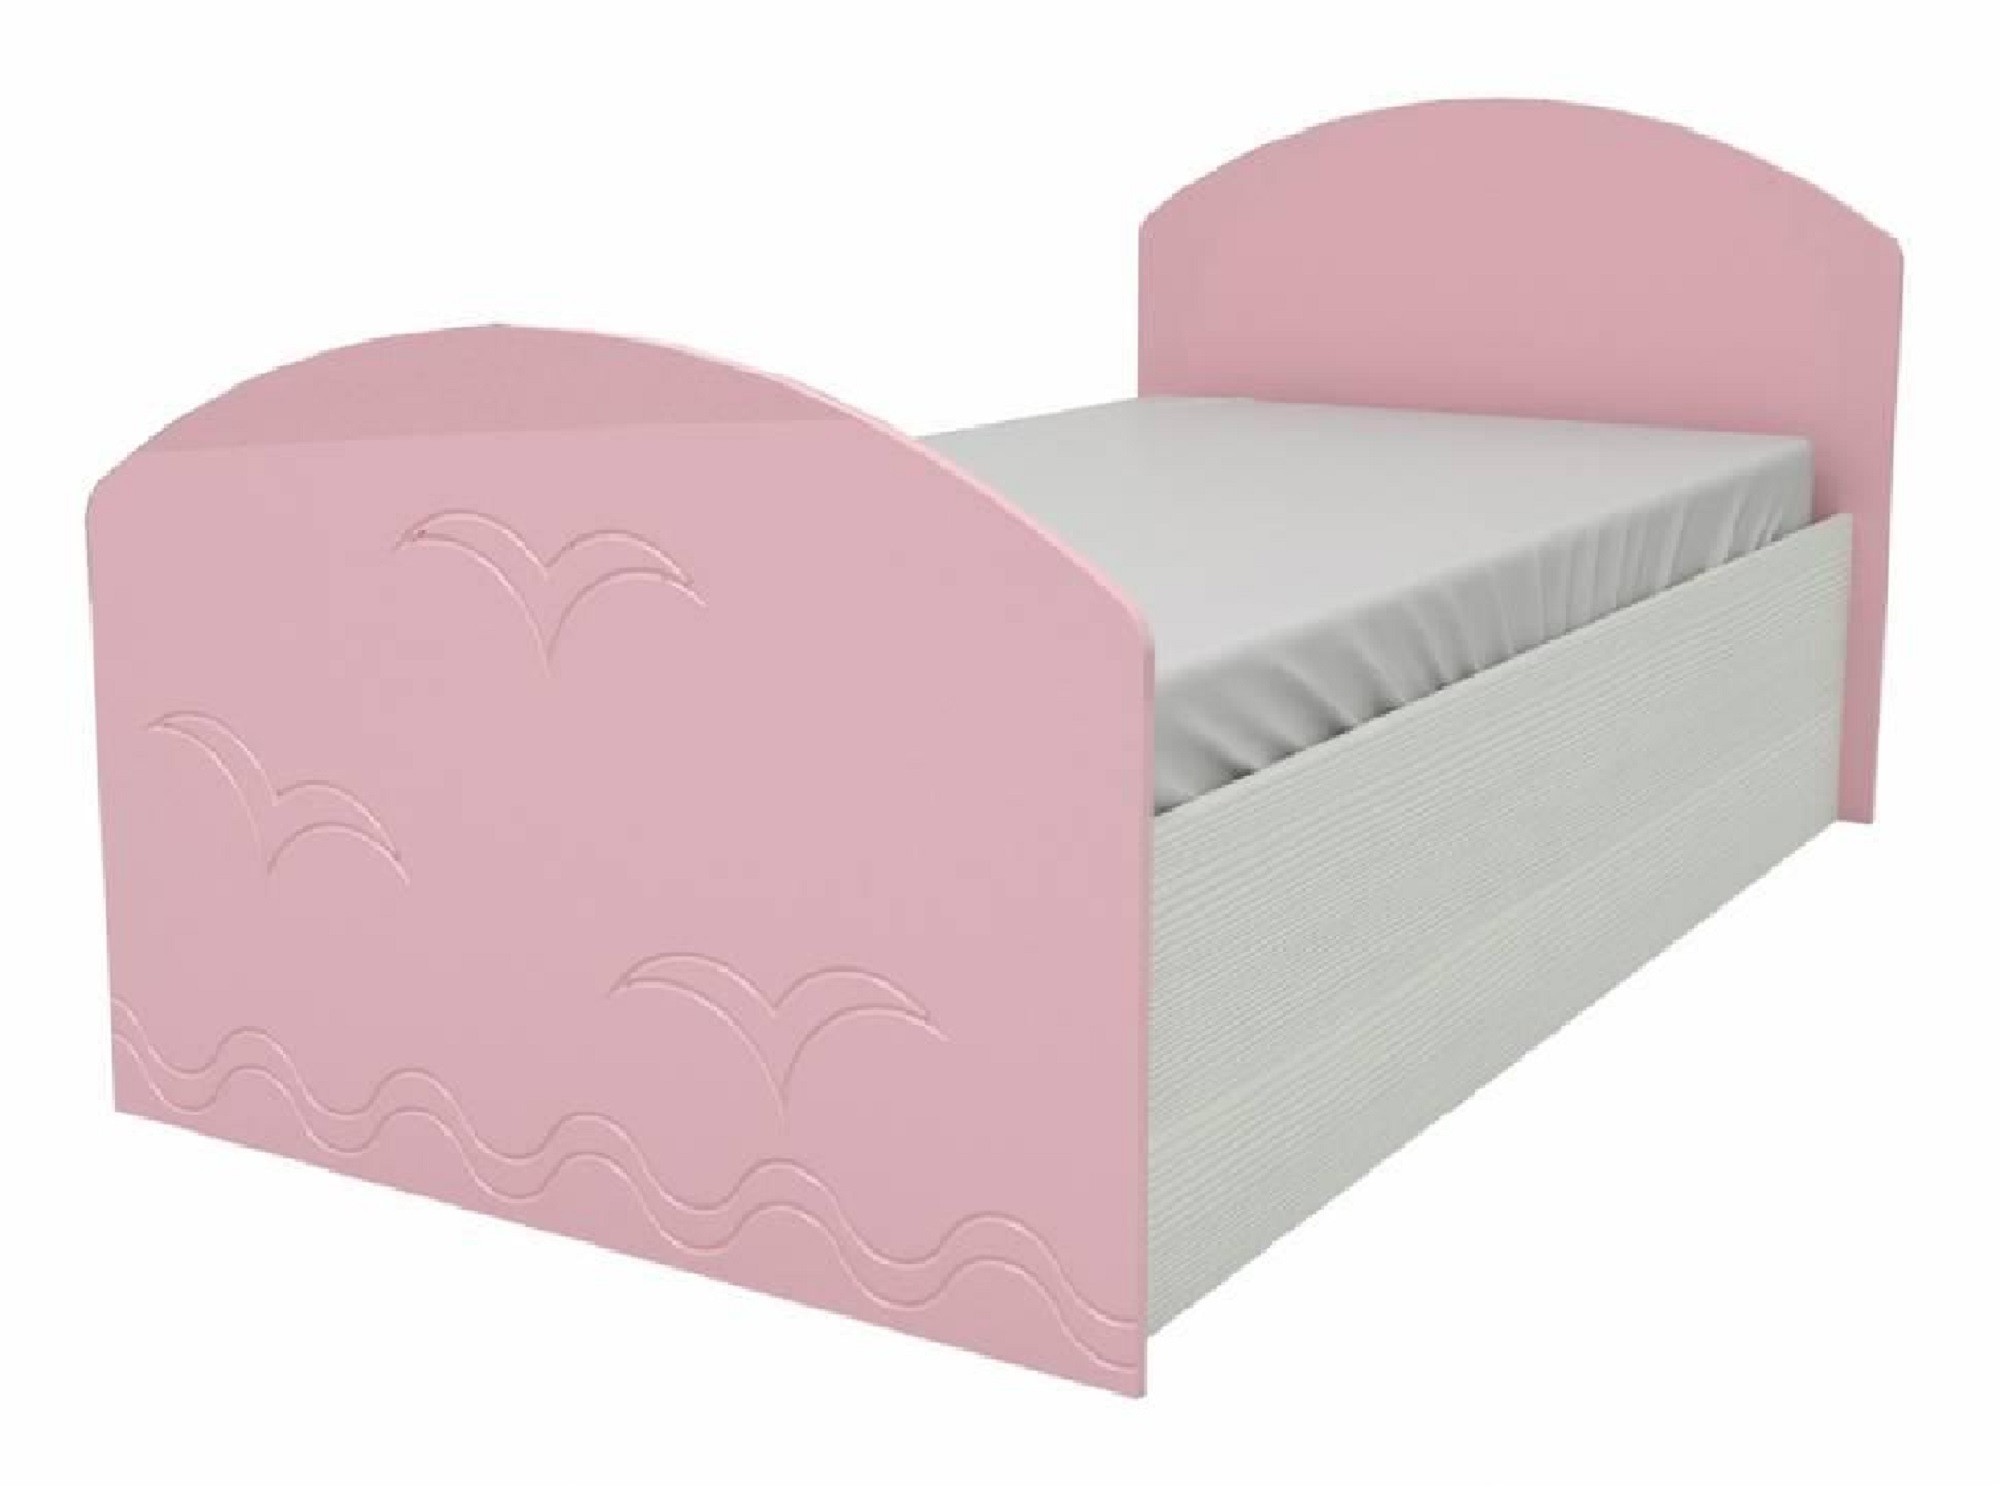 Юниор-2 Детская кровать 80, металлик (Розовый металлик, Дуб белёный) Розовый металлик, МДФ, ЛДСП юниор 2 стенка матовый розовый дуб белёный розовый мдф лдсп